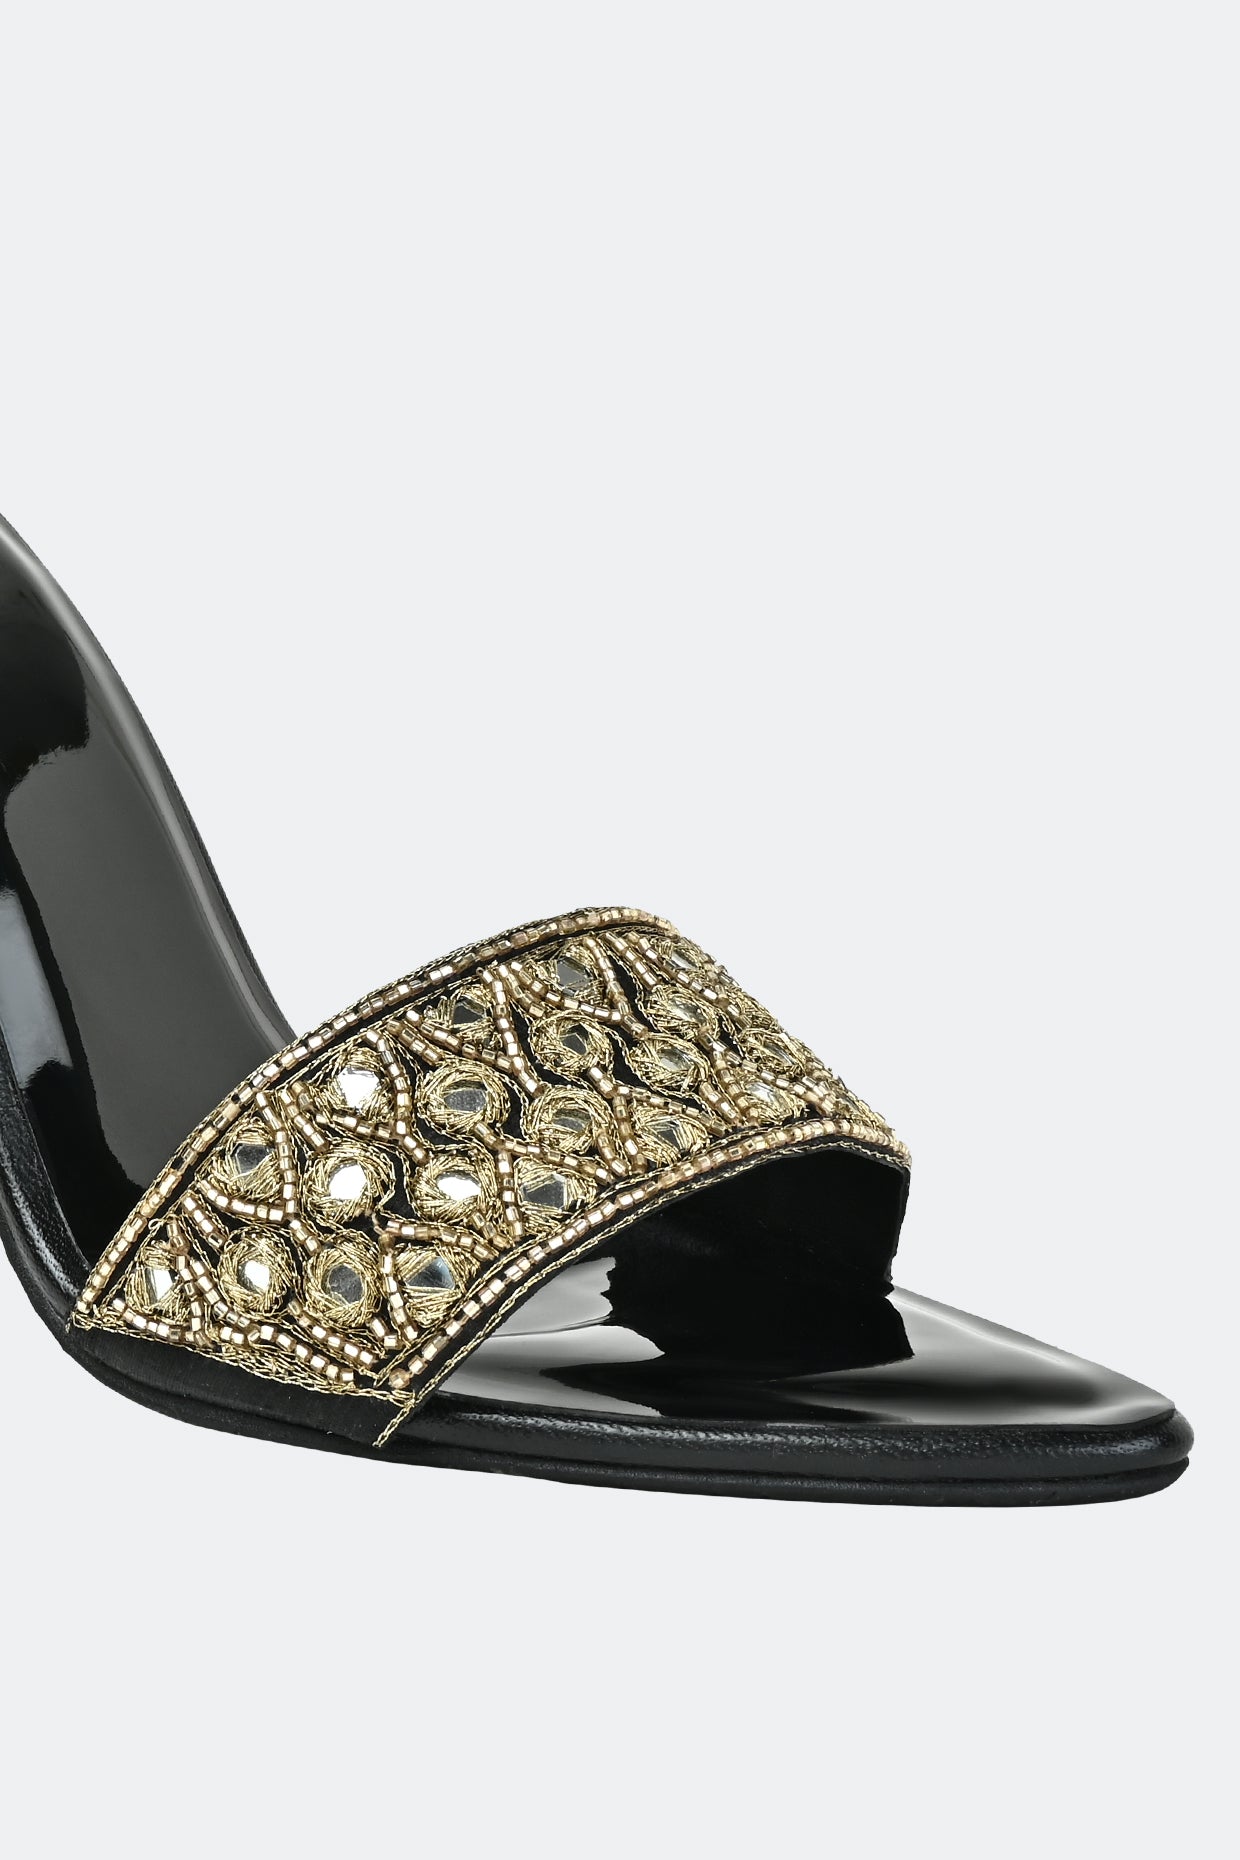 Luxe Noir Crystal Heels For Women